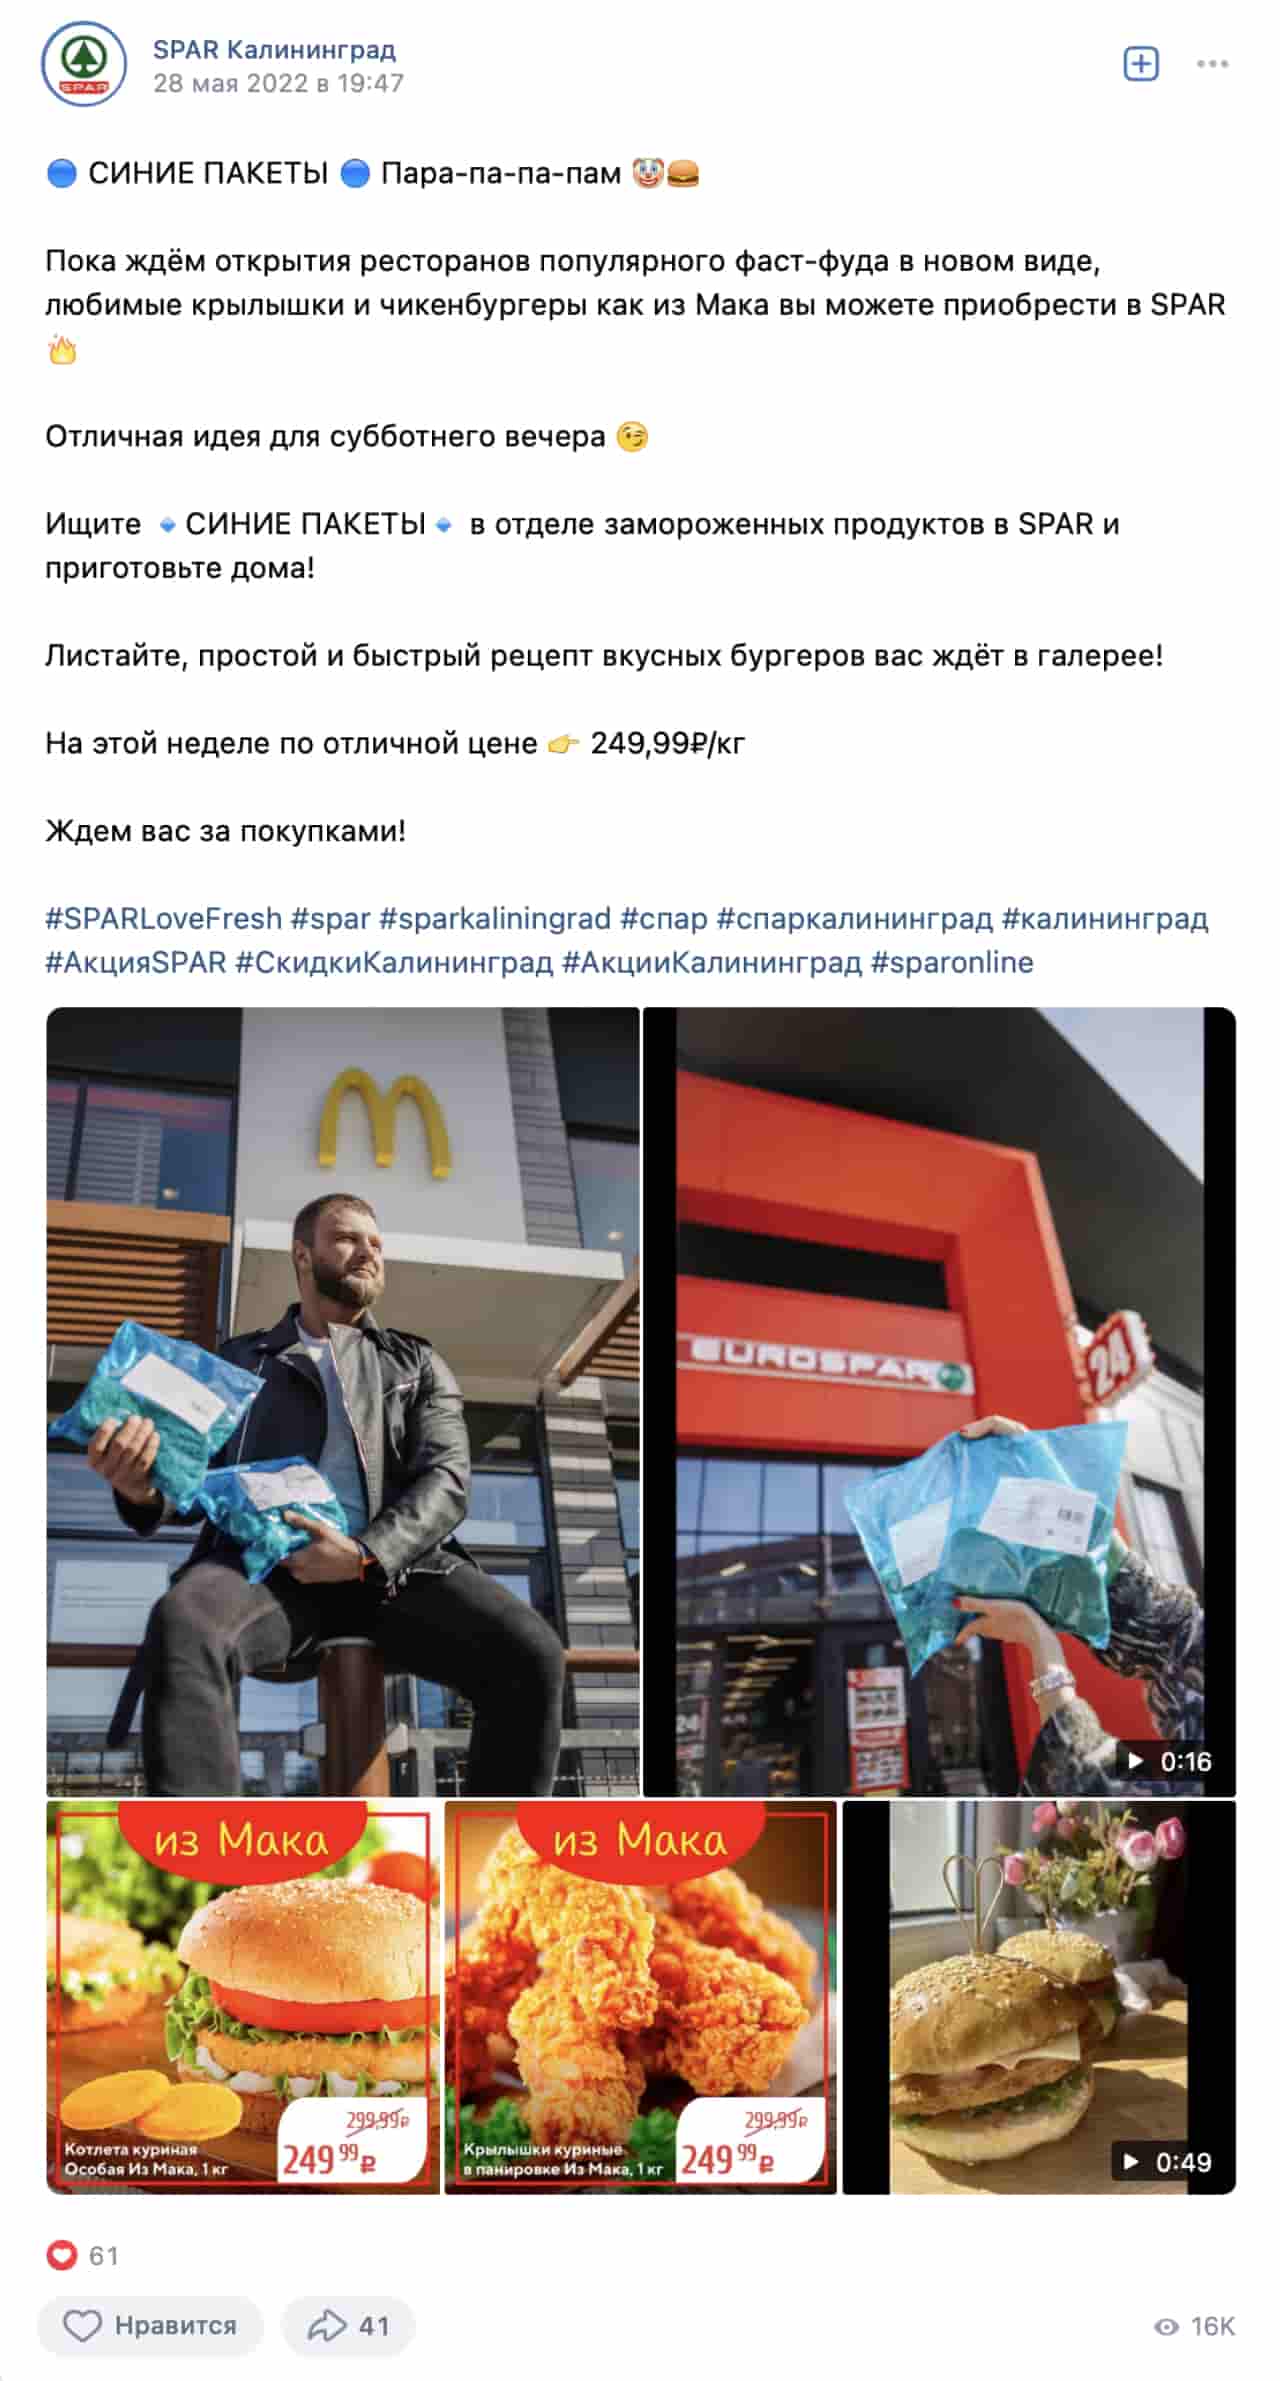 Фотография на фоне McDonald’s